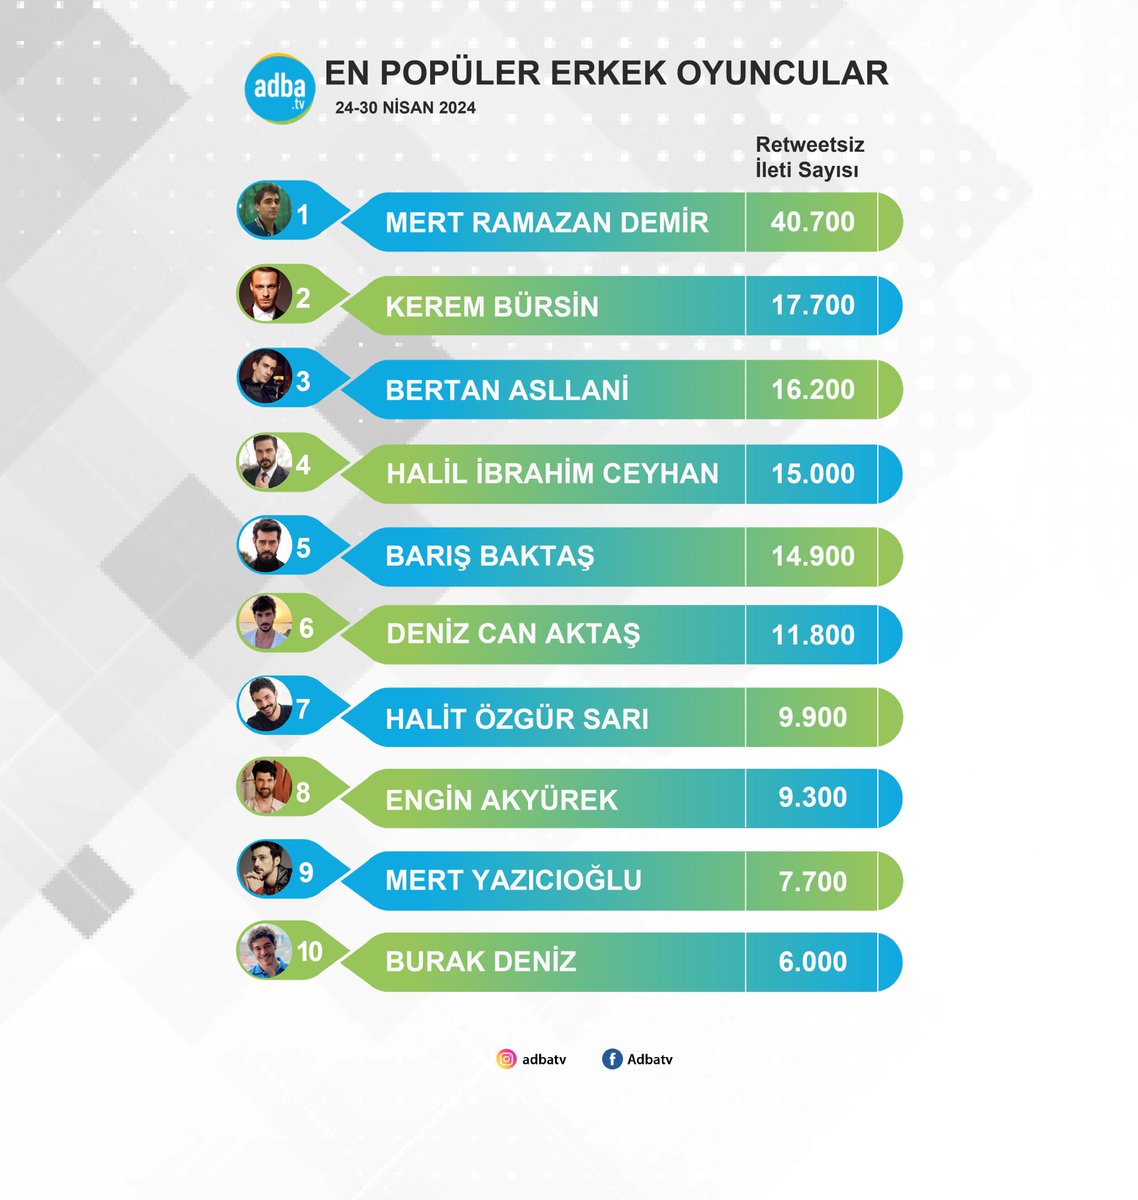 Ekranın en popüler erkek oyuncuları belli oldu! (24-30 Nisan)
#MertRamazanDemir 
#KeremBürsin 
#BertanAsllani 
#HalilİbrahimCeyhan 
#BarışBaktaş 
#DenizCanAktaş 
#HalitÖzgürSarı 
#EnginAkyürek 
#MertYazıcıoğlu 
#BurakDeniz